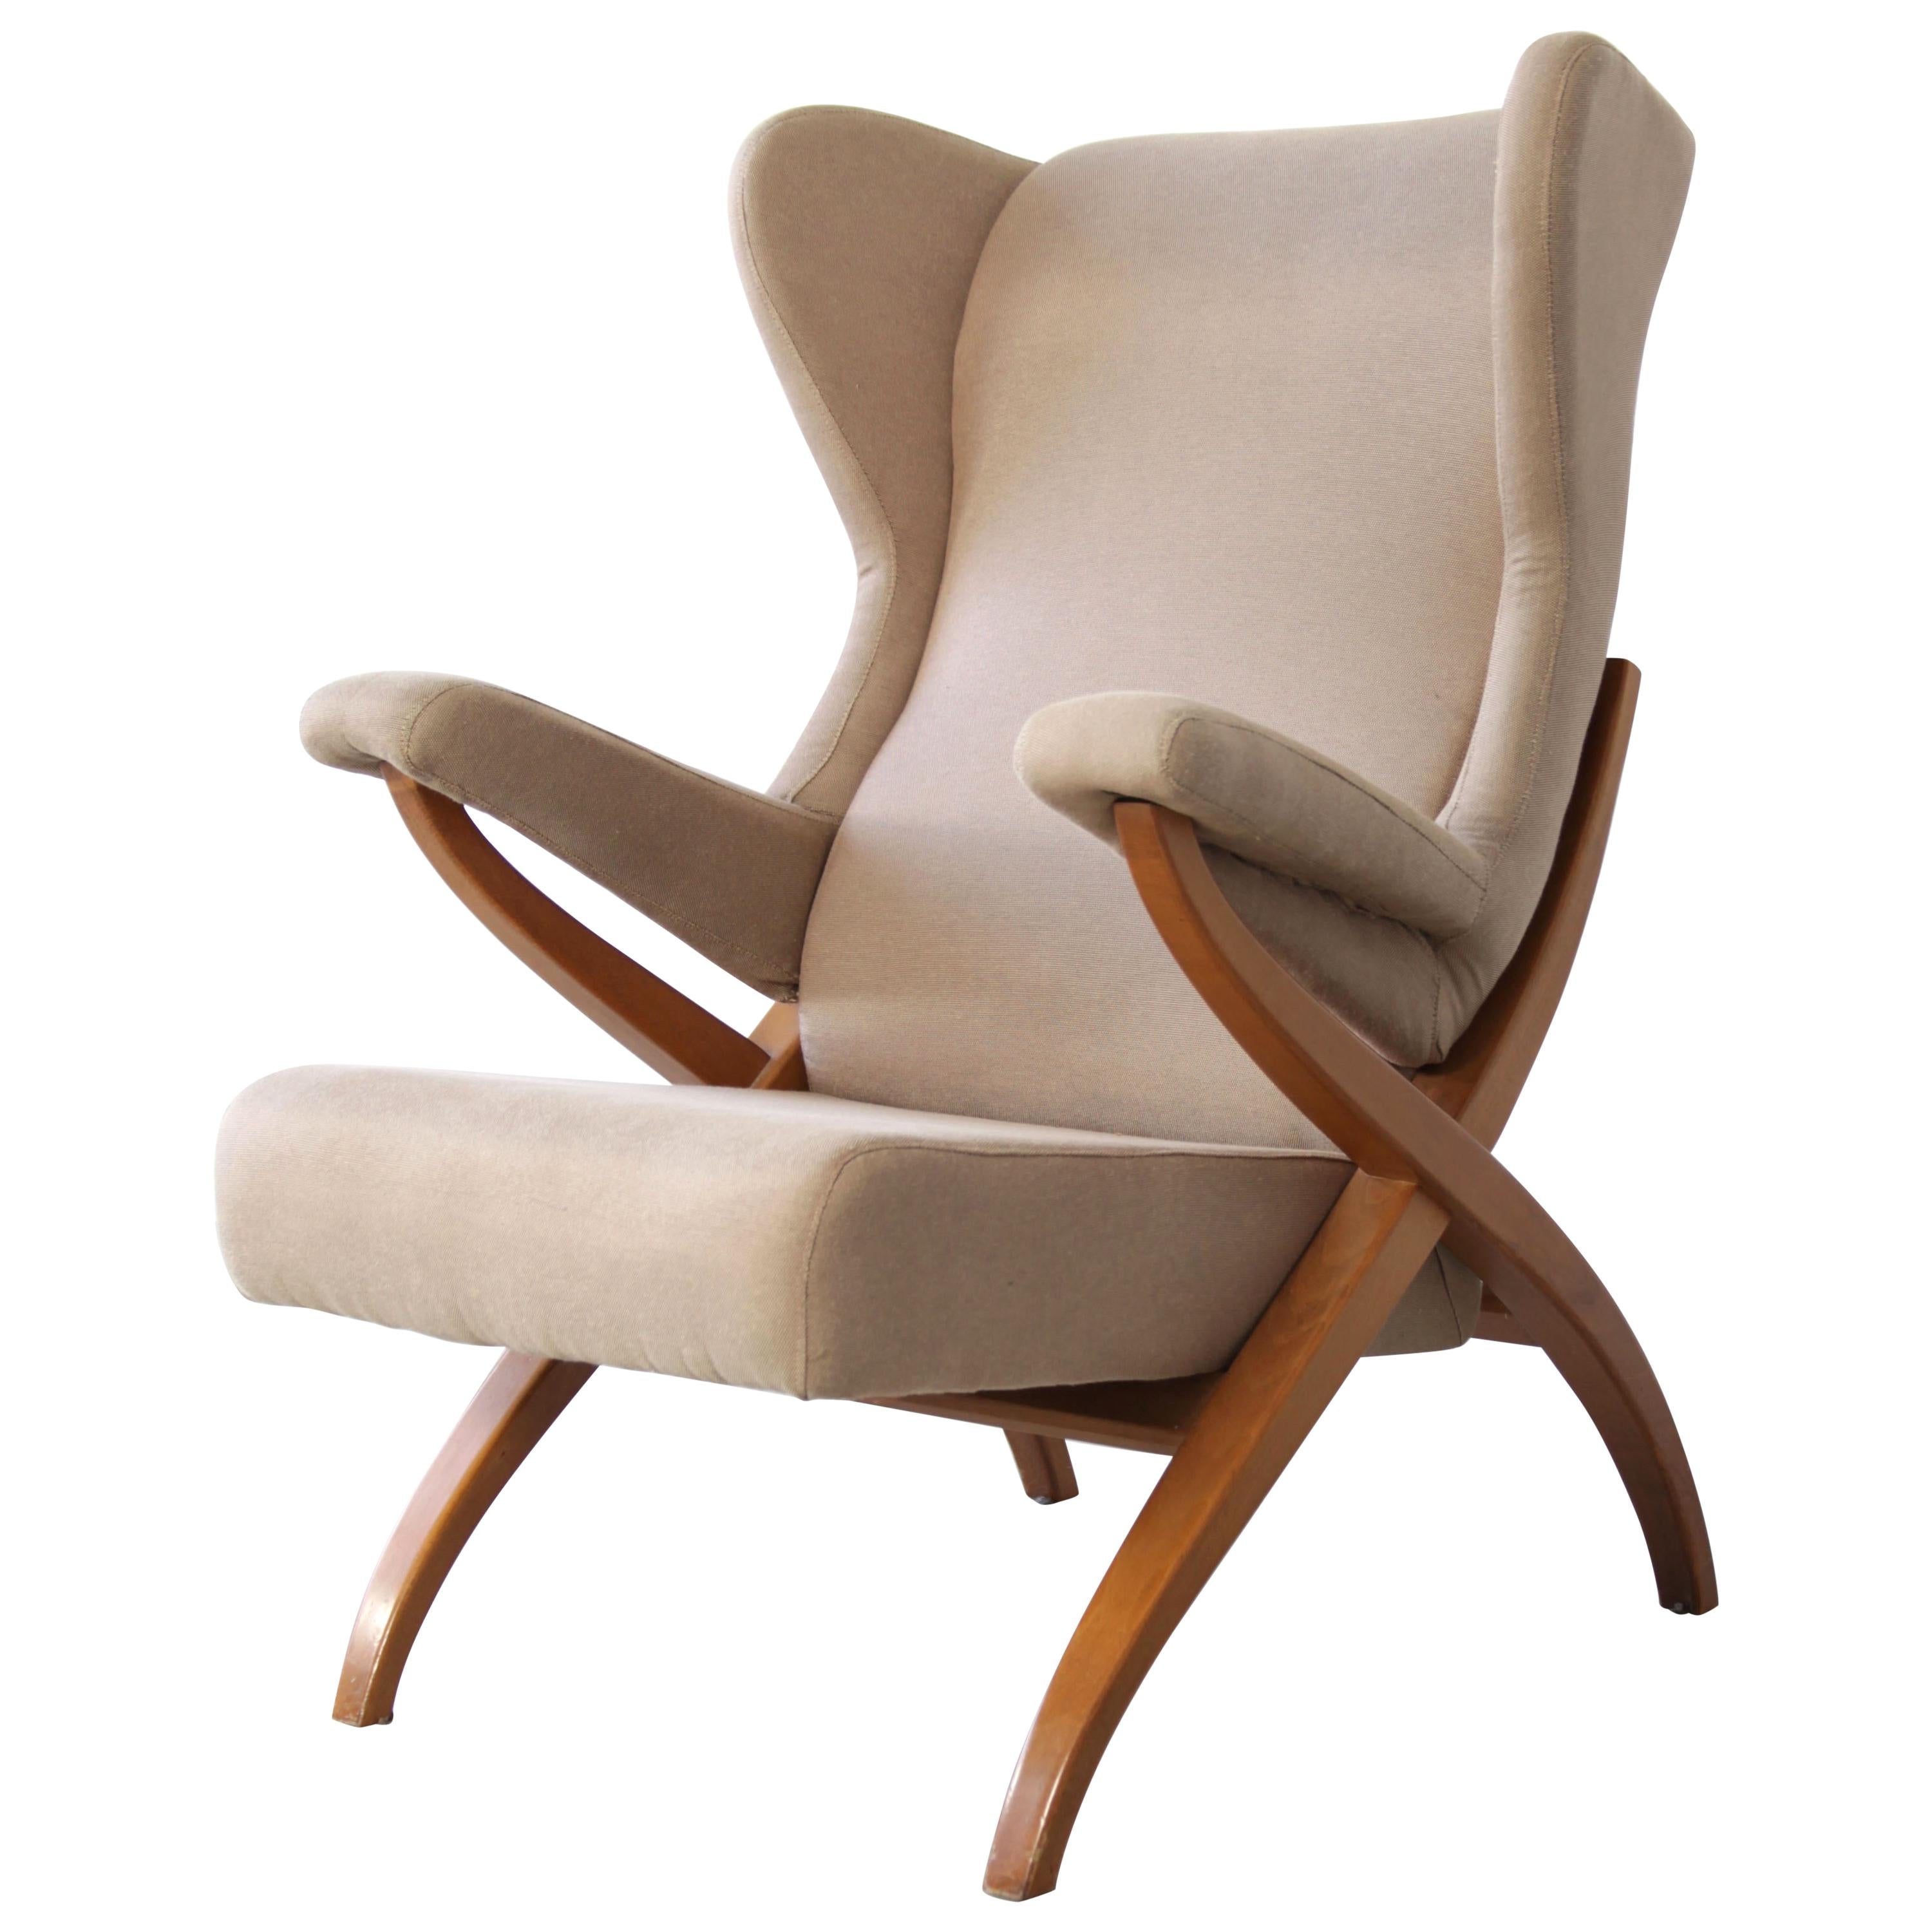 Sessel „Fiorenza“, entworfen 1952 von Franco Albini für Arflex, Italien.